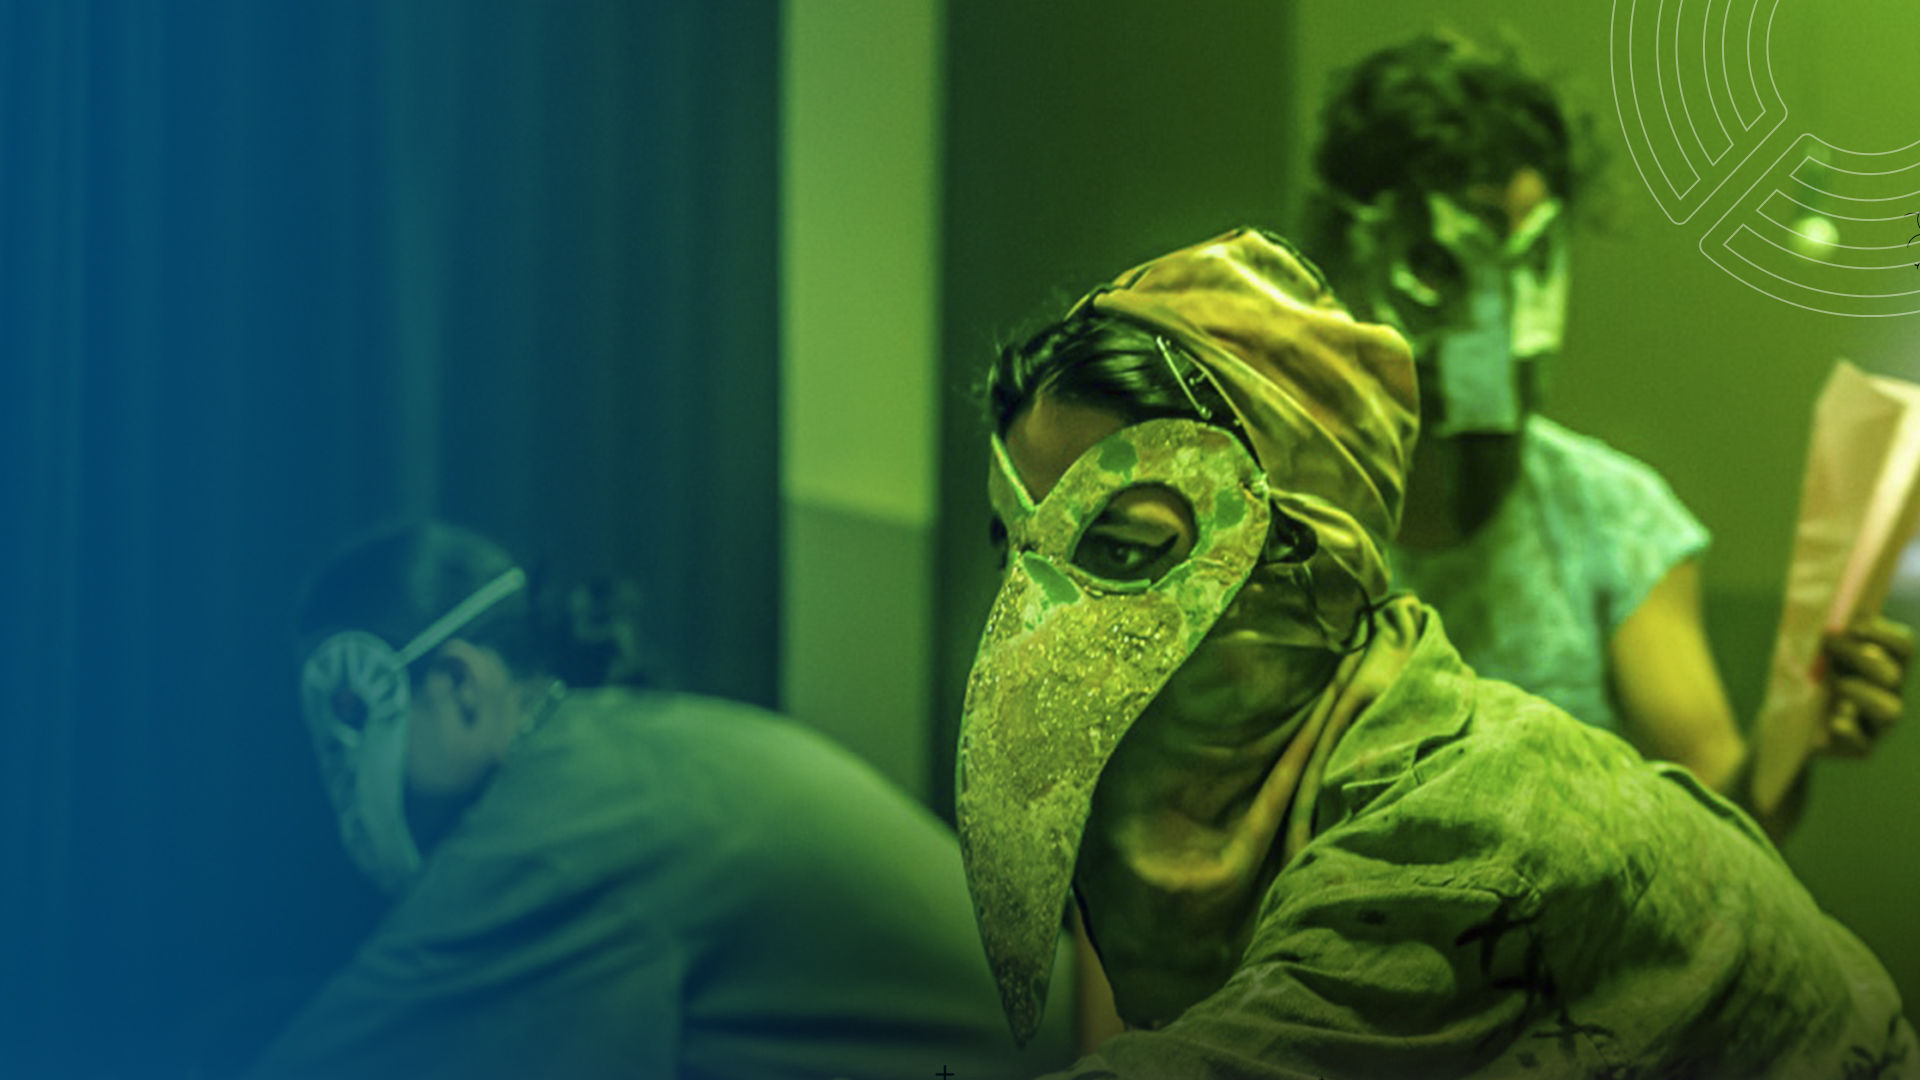 Foto colorida nas cores azul e verde mostrando uma cena dos estudantes da SP com máscaras